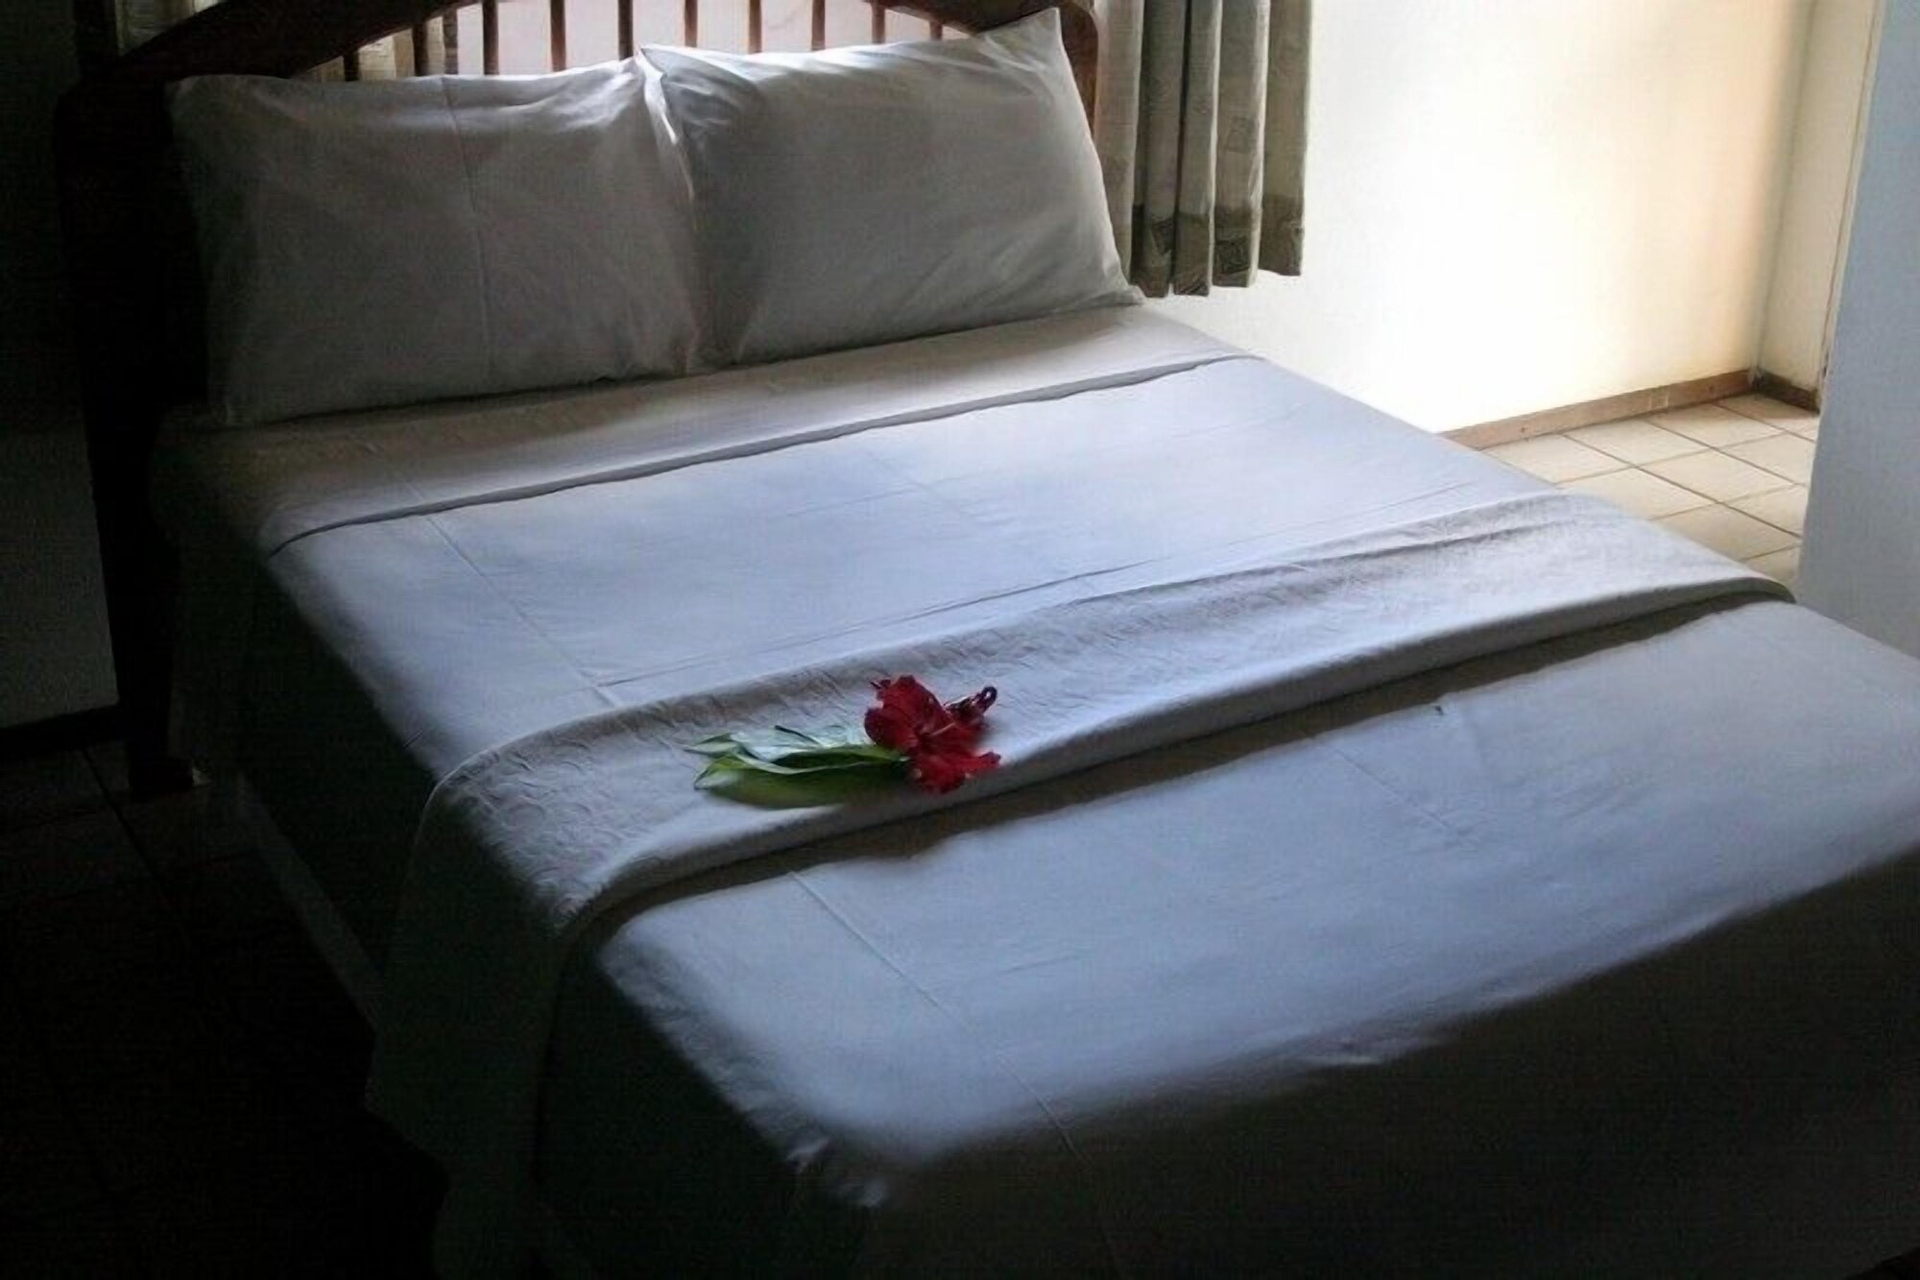 Bedroom 3, Pousada Alto da Pipa, Tibau do Sul